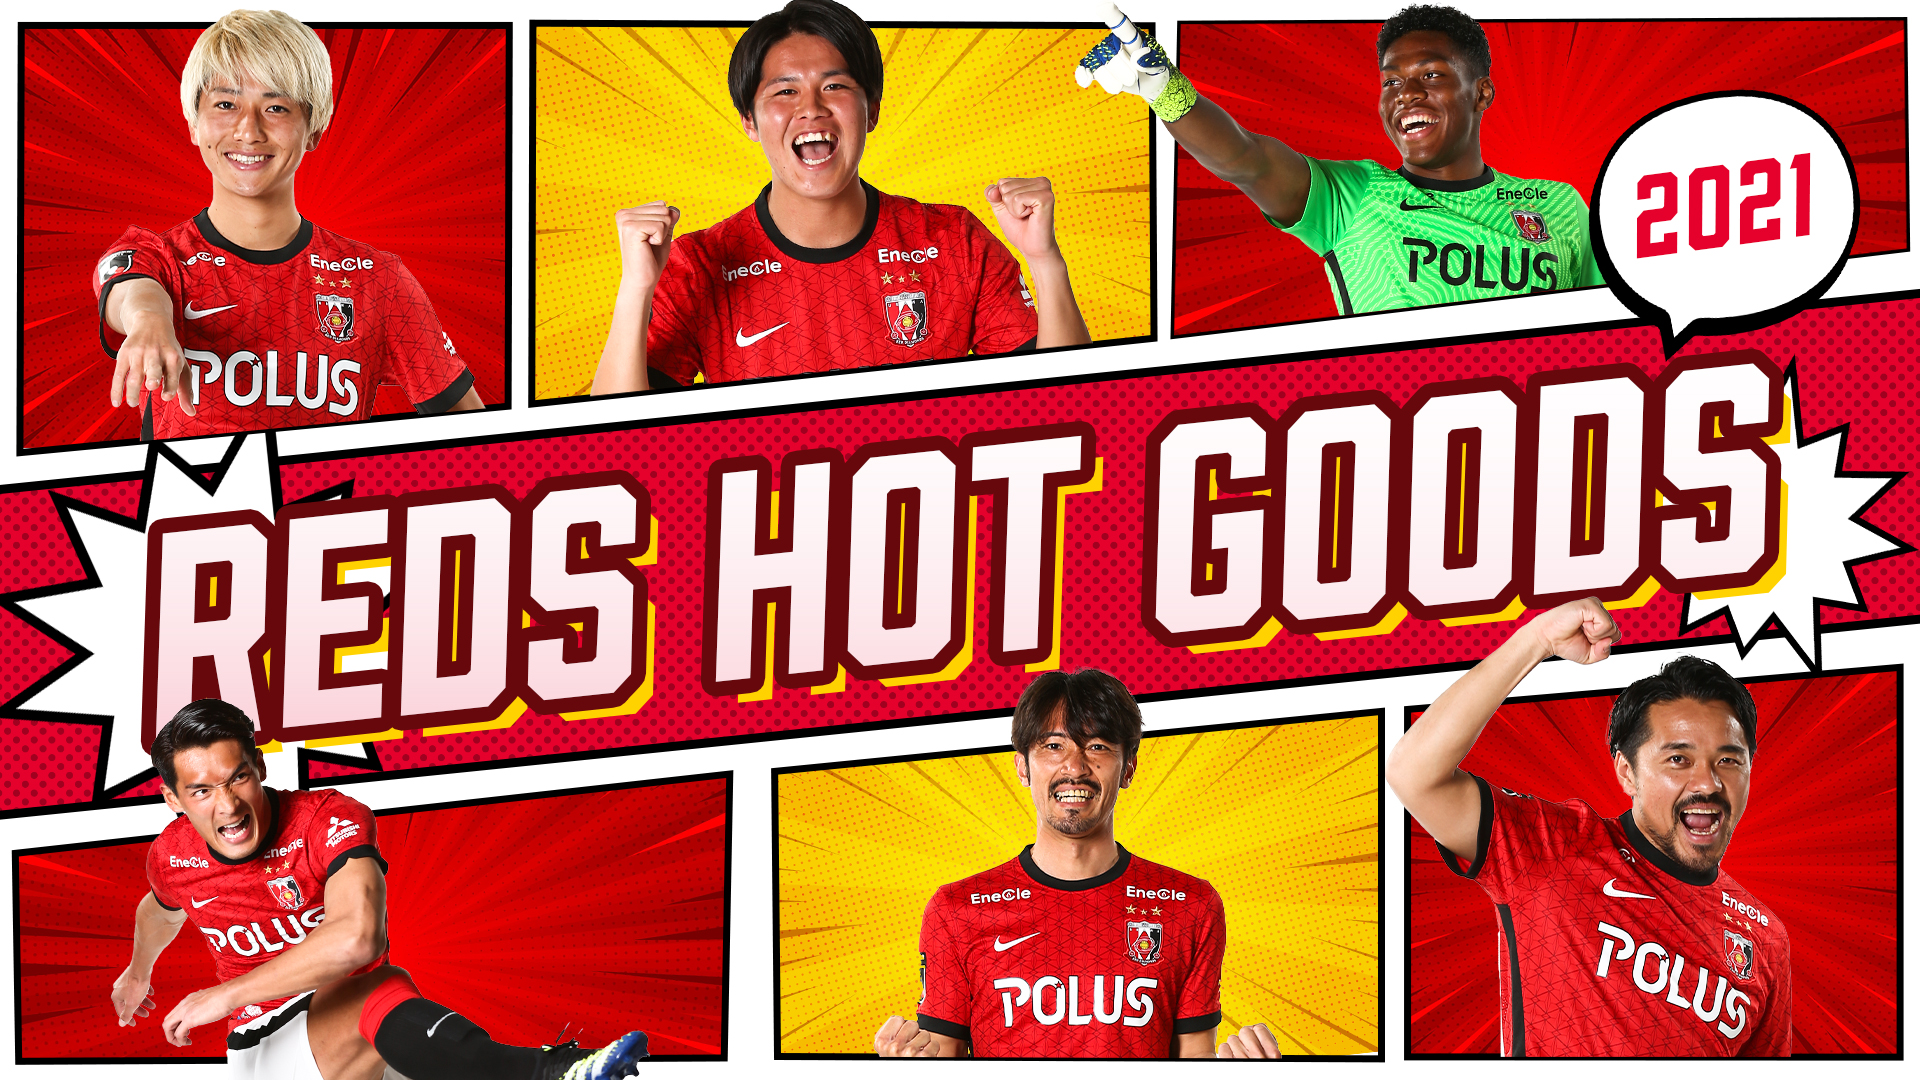 Reds Hot Goods 21 8月のレッズグッズ情報 クラブインフォメーション Urawa Red Diamonds Official Website